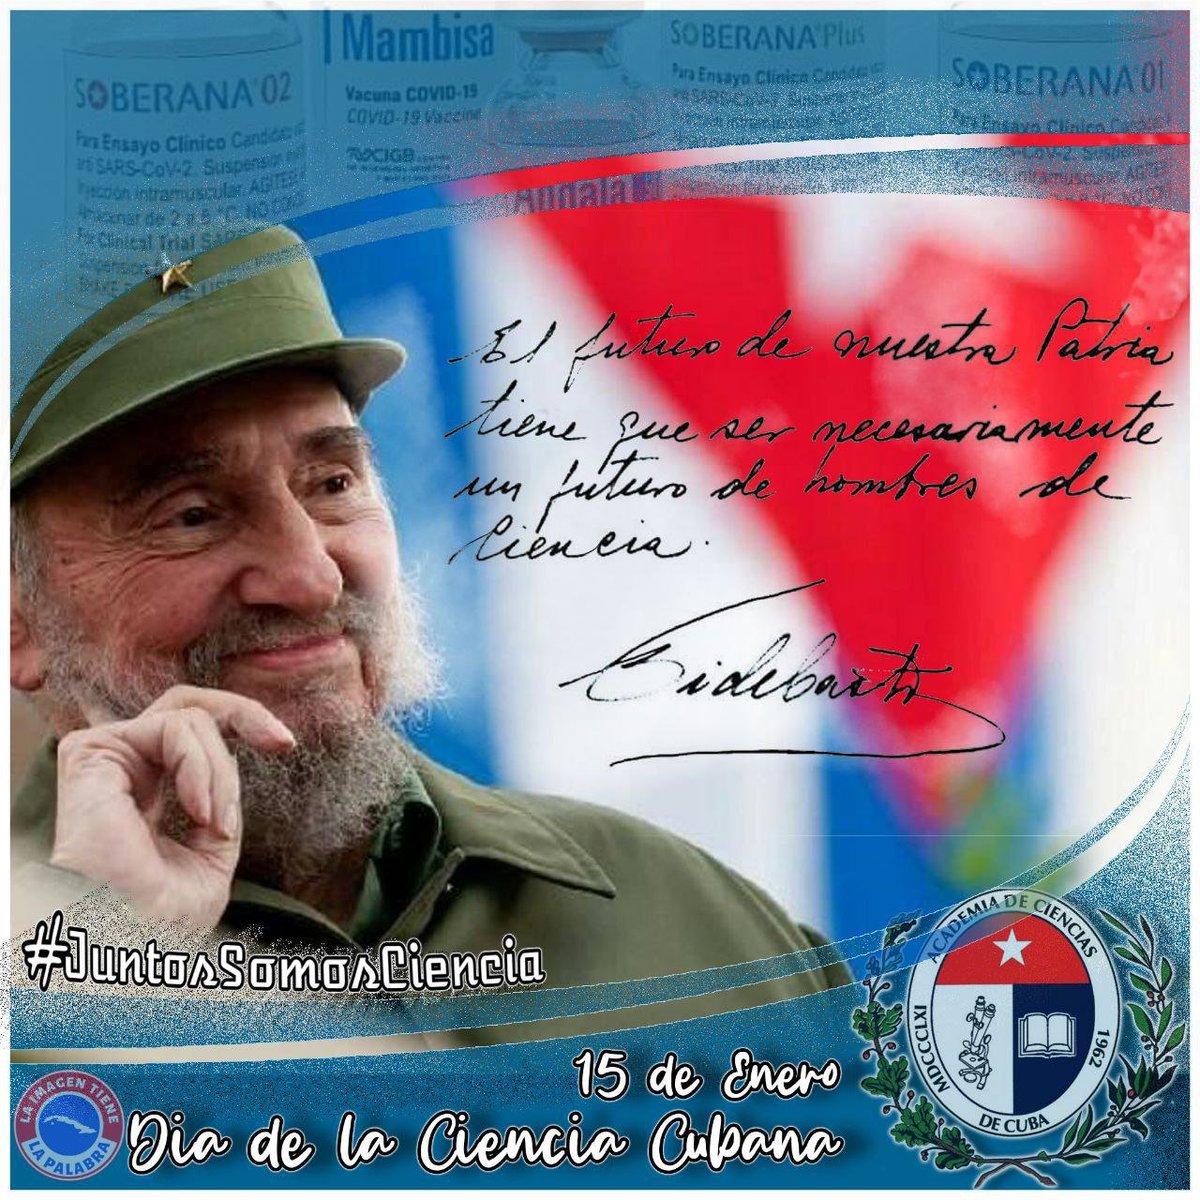 Nuestro Comandante en Jefe, fue, es y será el motor impulsor de la ciencia en Cuba.
#CubaEsCiencia 
#EstaEsLaRevolucion 
#DeZurdaTeam